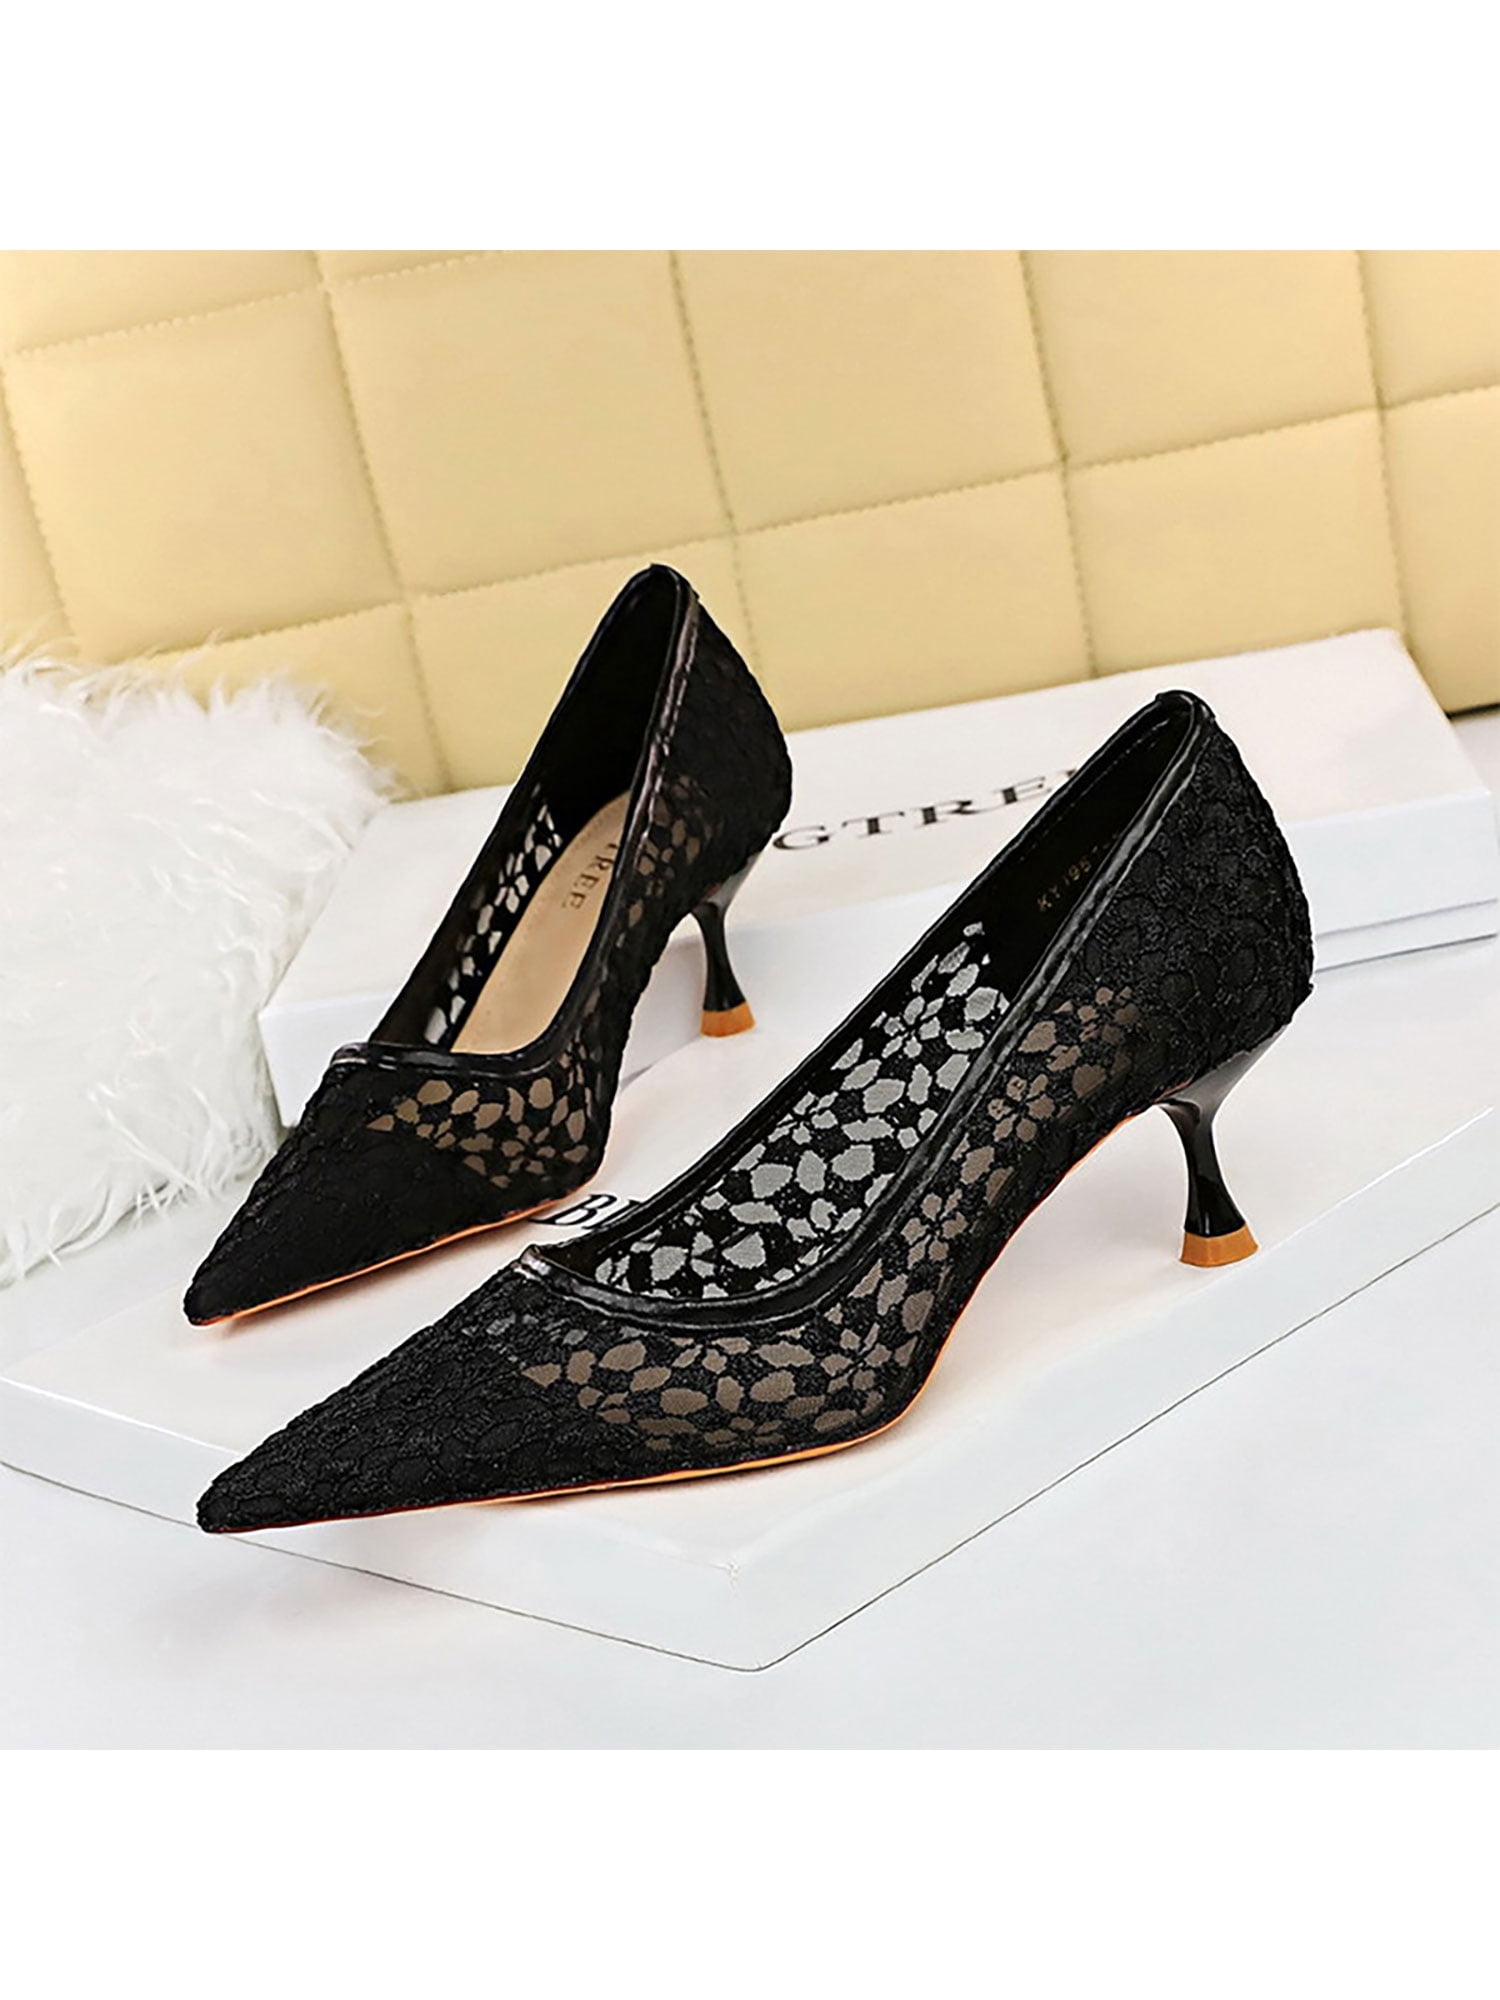 Smooth And Sleek Block Heels | Windsor | Black heels classy, Heels, Black  heels prom